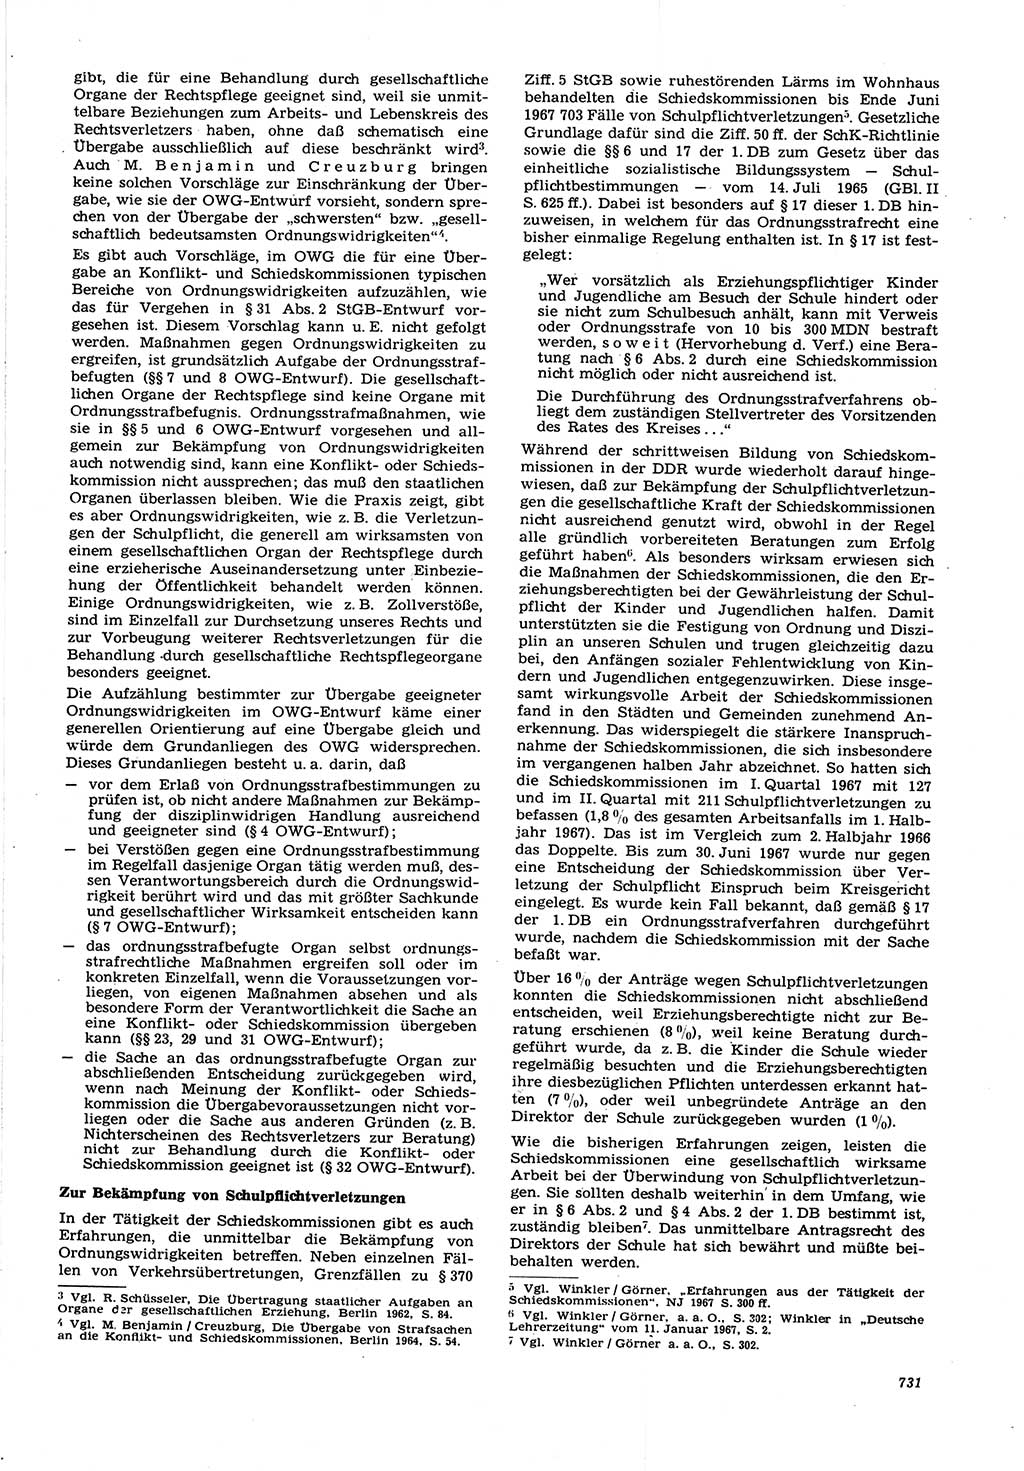 Neue Justiz (NJ), Zeitschrift für Recht und Rechtswissenschaft [Deutsche Demokratische Republik (DDR)], 21. Jahrgang 1967, Seite 731 (NJ DDR 1967, S. 731)